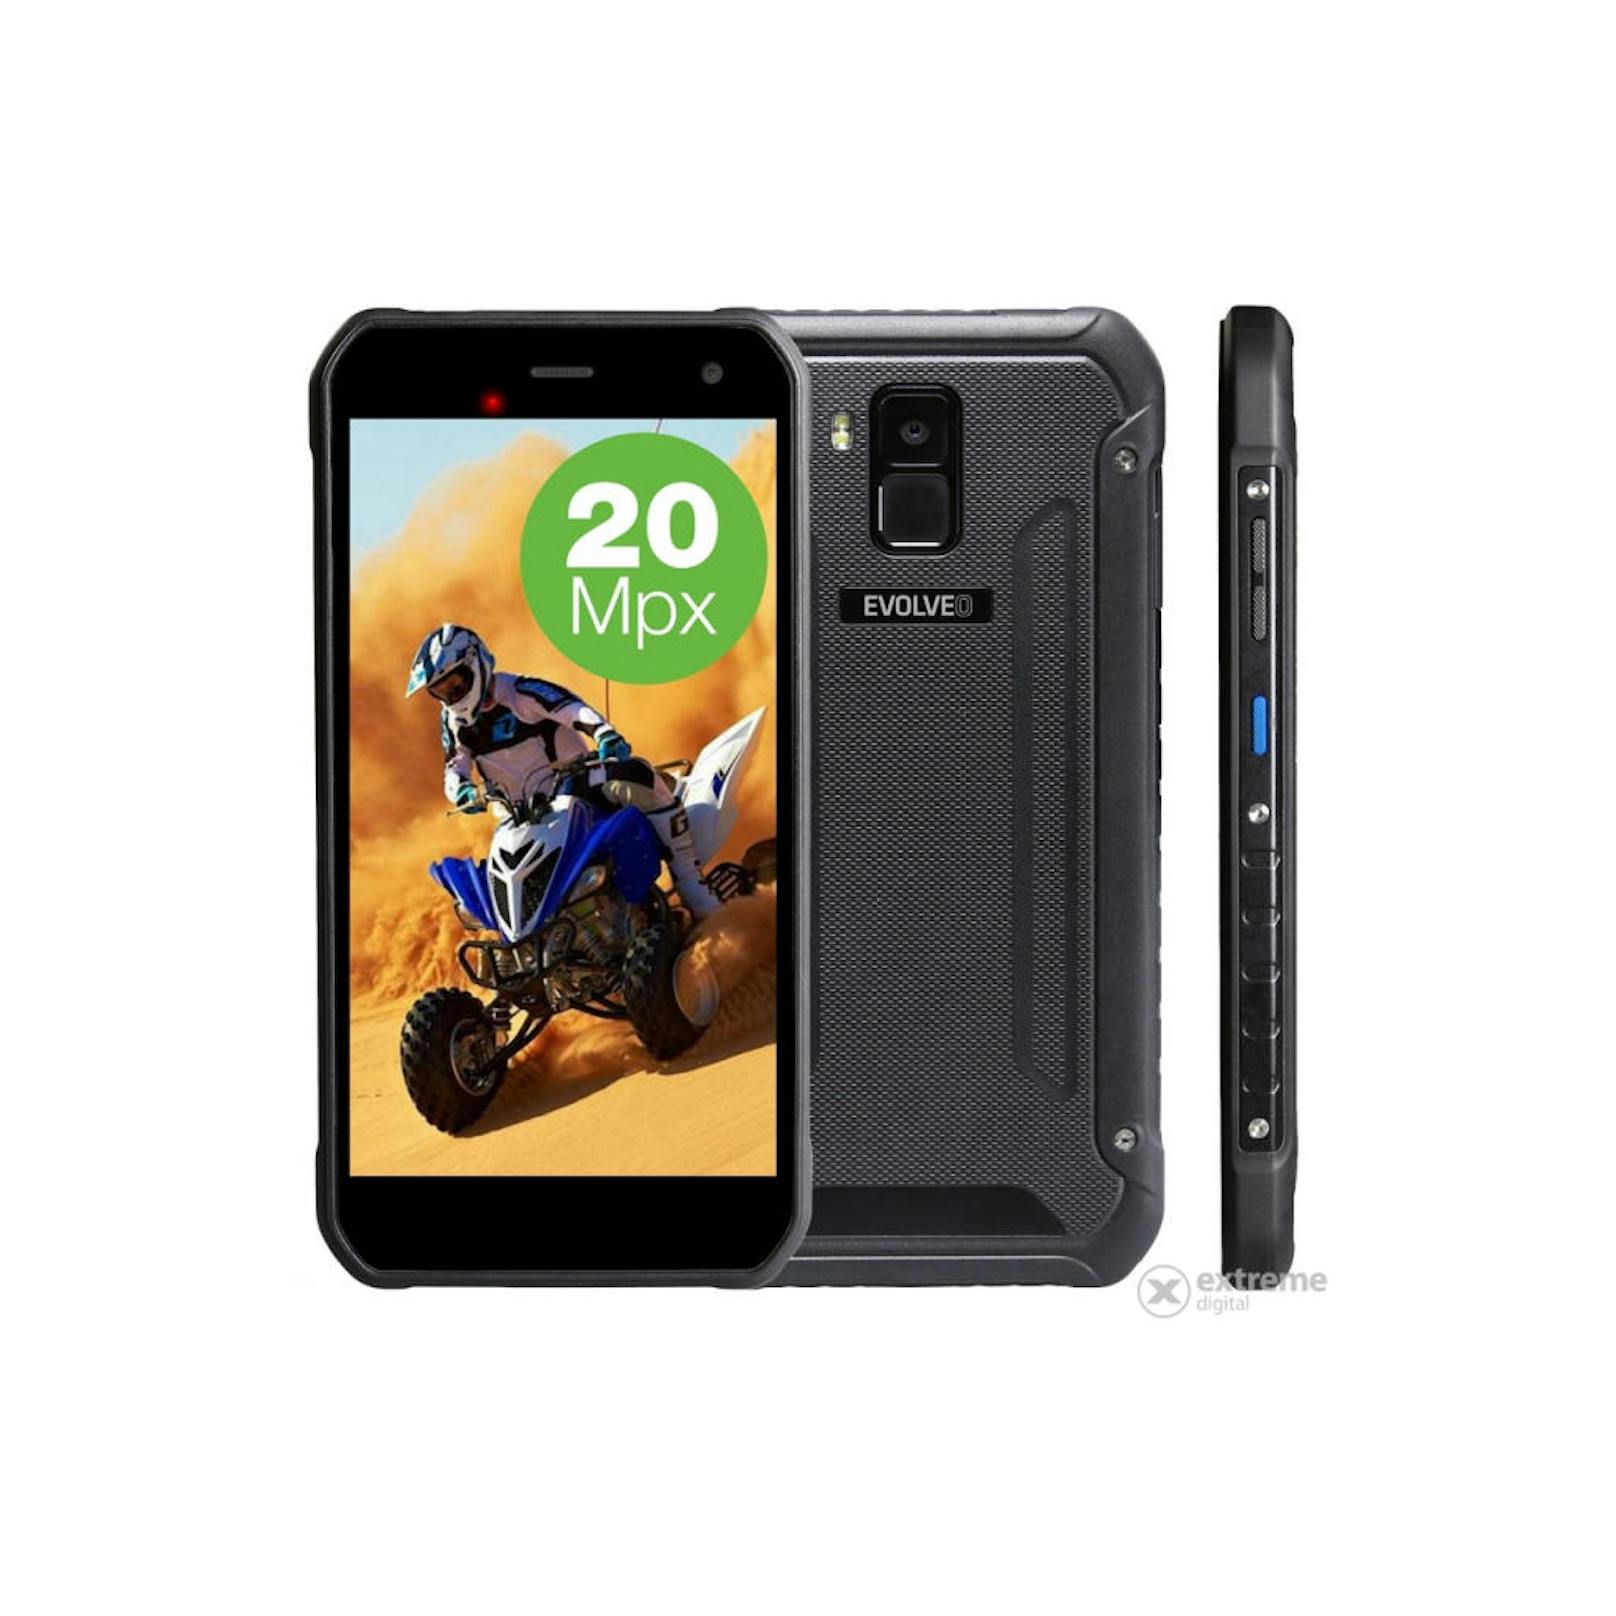 <b>Evolveo StrongPhone G8:</b> Starke 20 MP Hauptkamera, ansonsten Mittelklasseausstattung. Zielt auf den Motorsport im staubigen und sandigen Umgebungen ab. Um rund 325 Euro erhältlich.